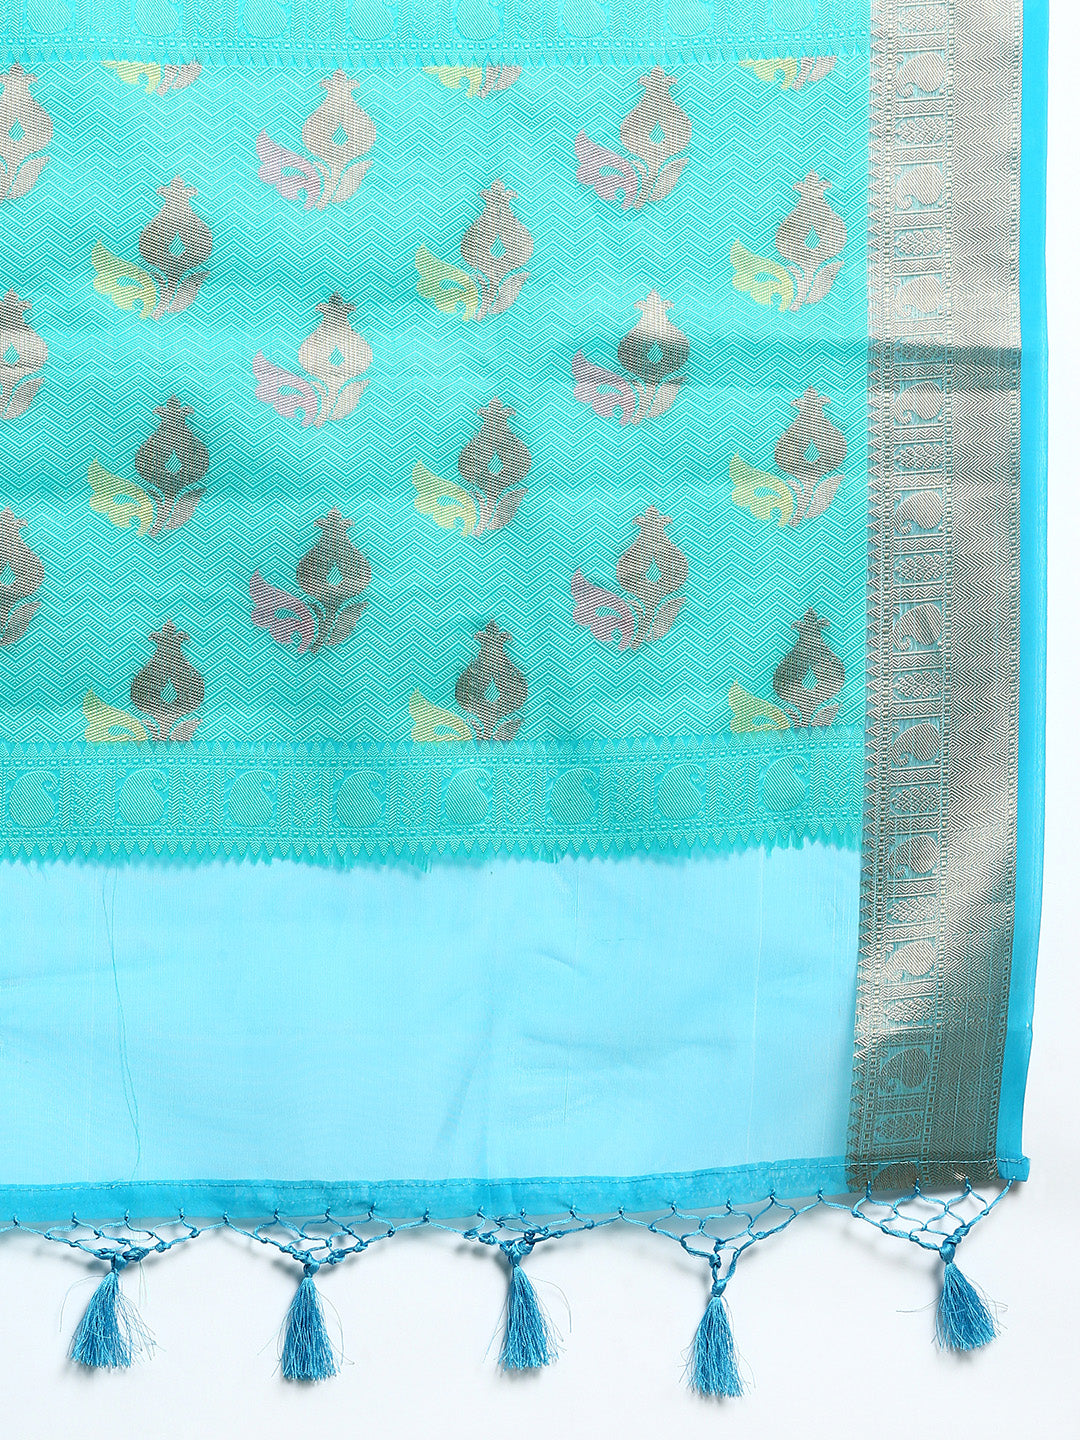 Semi Kora Cotton Allover Design Saree Green & Sky Blue with Zari Border SKCW06-Zari view